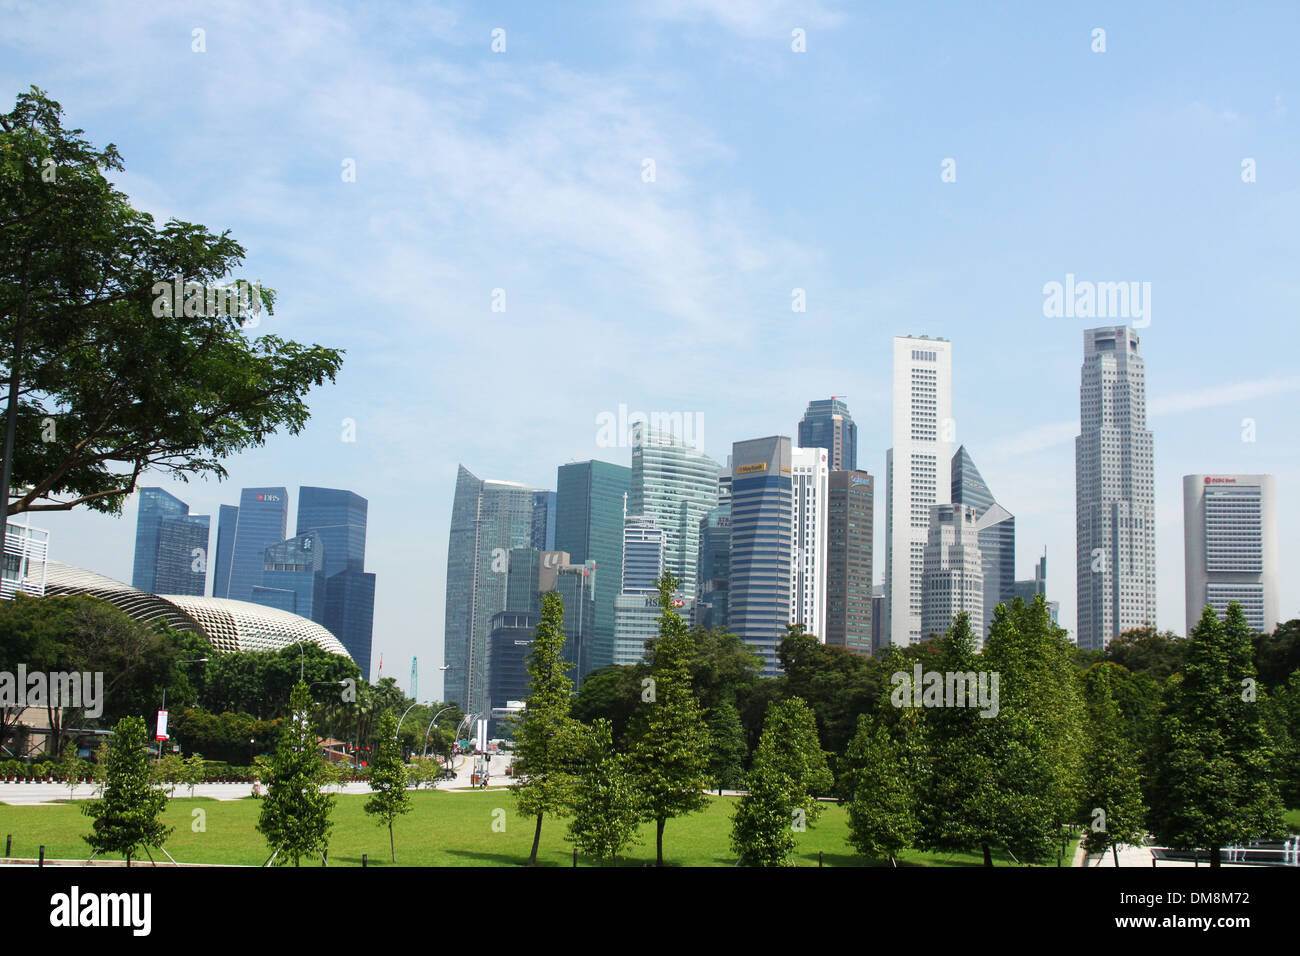 Zeigen Sie über Krieg Memorial Park und in die Innenstadt von Singapur an. Hochhäuser des Financial District sind sichtbar. Stockfoto